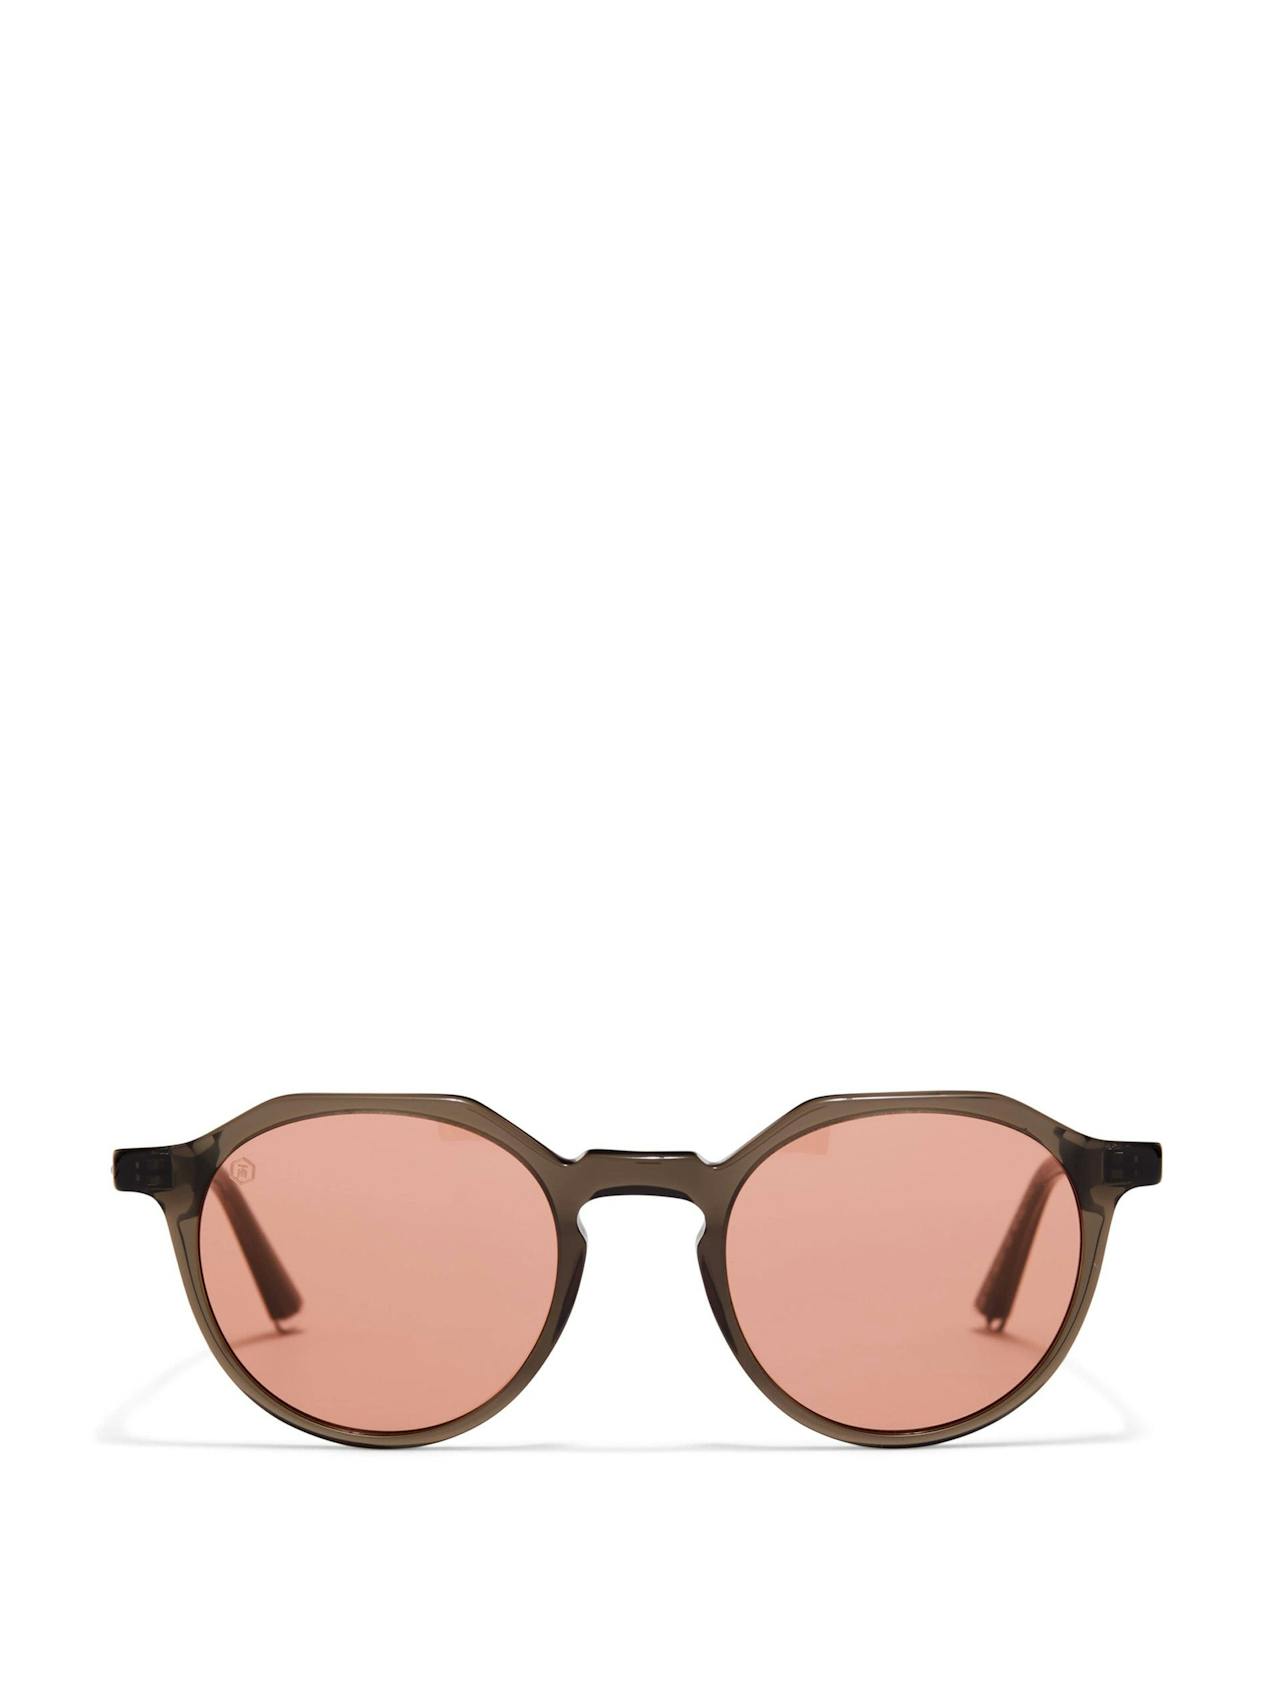 Oxford sunglasses